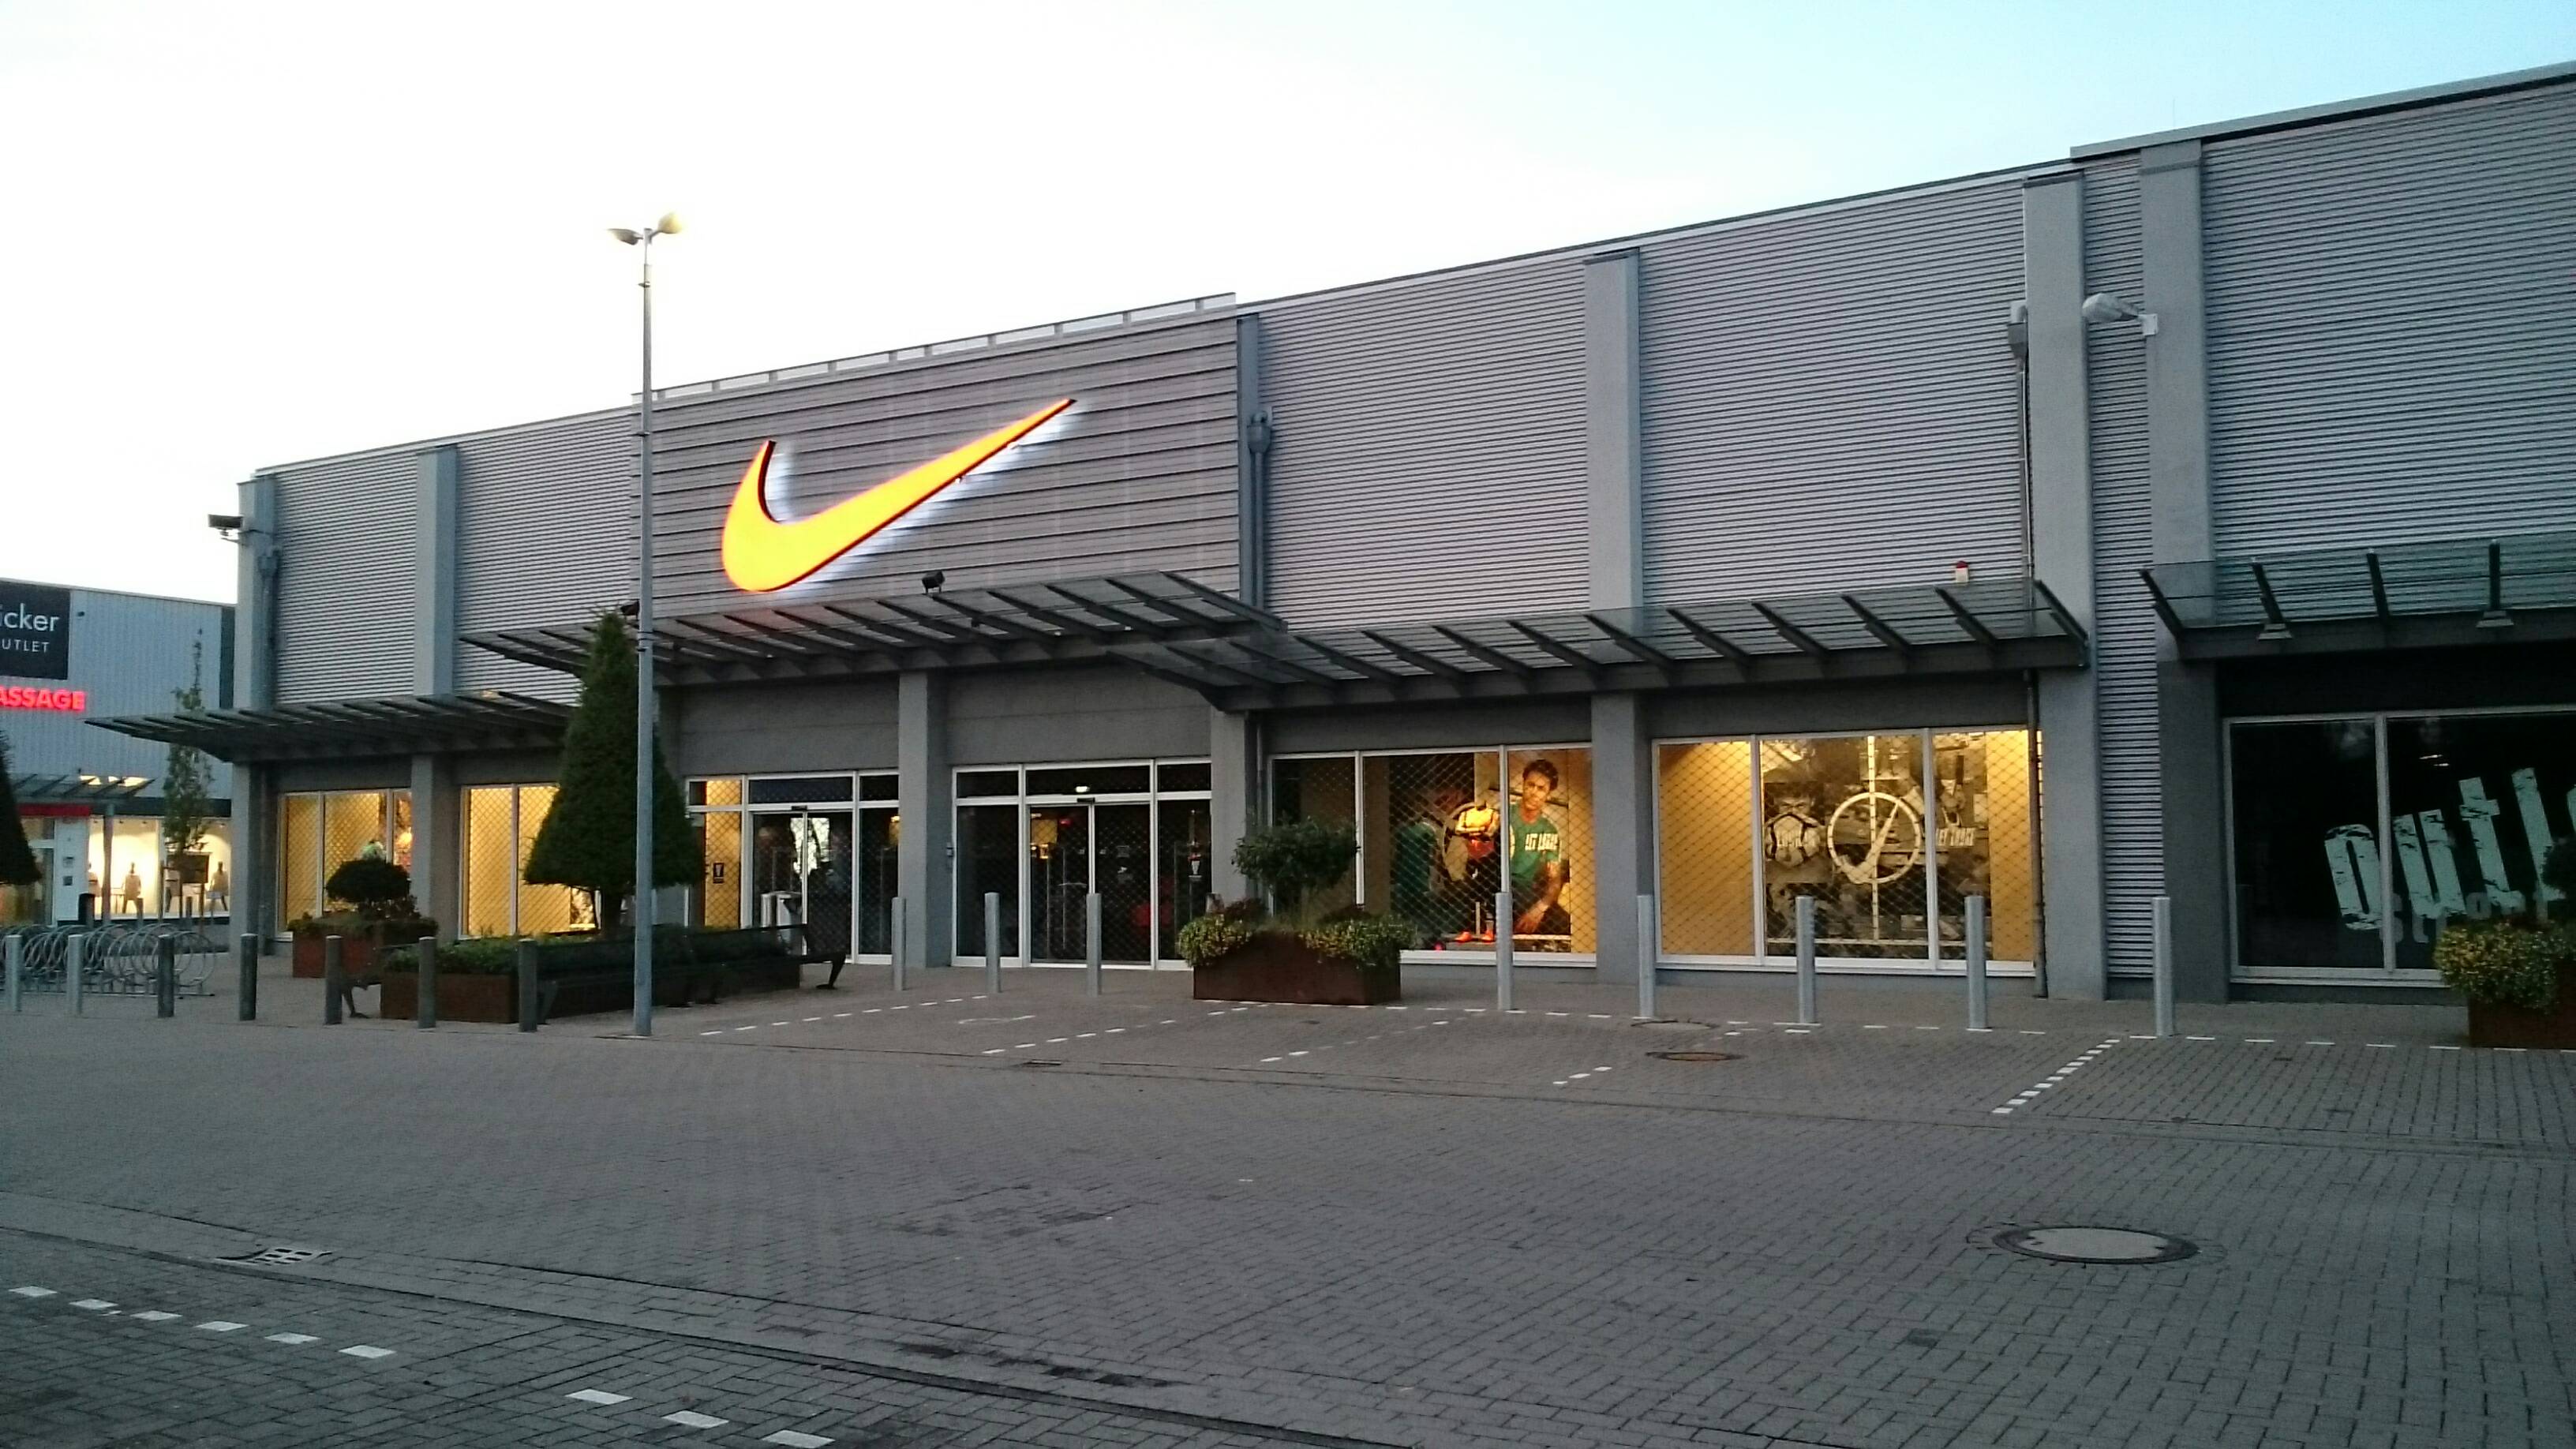 ➤ Nike Factory Store Öffnungszeiten | Adresse | Telefon